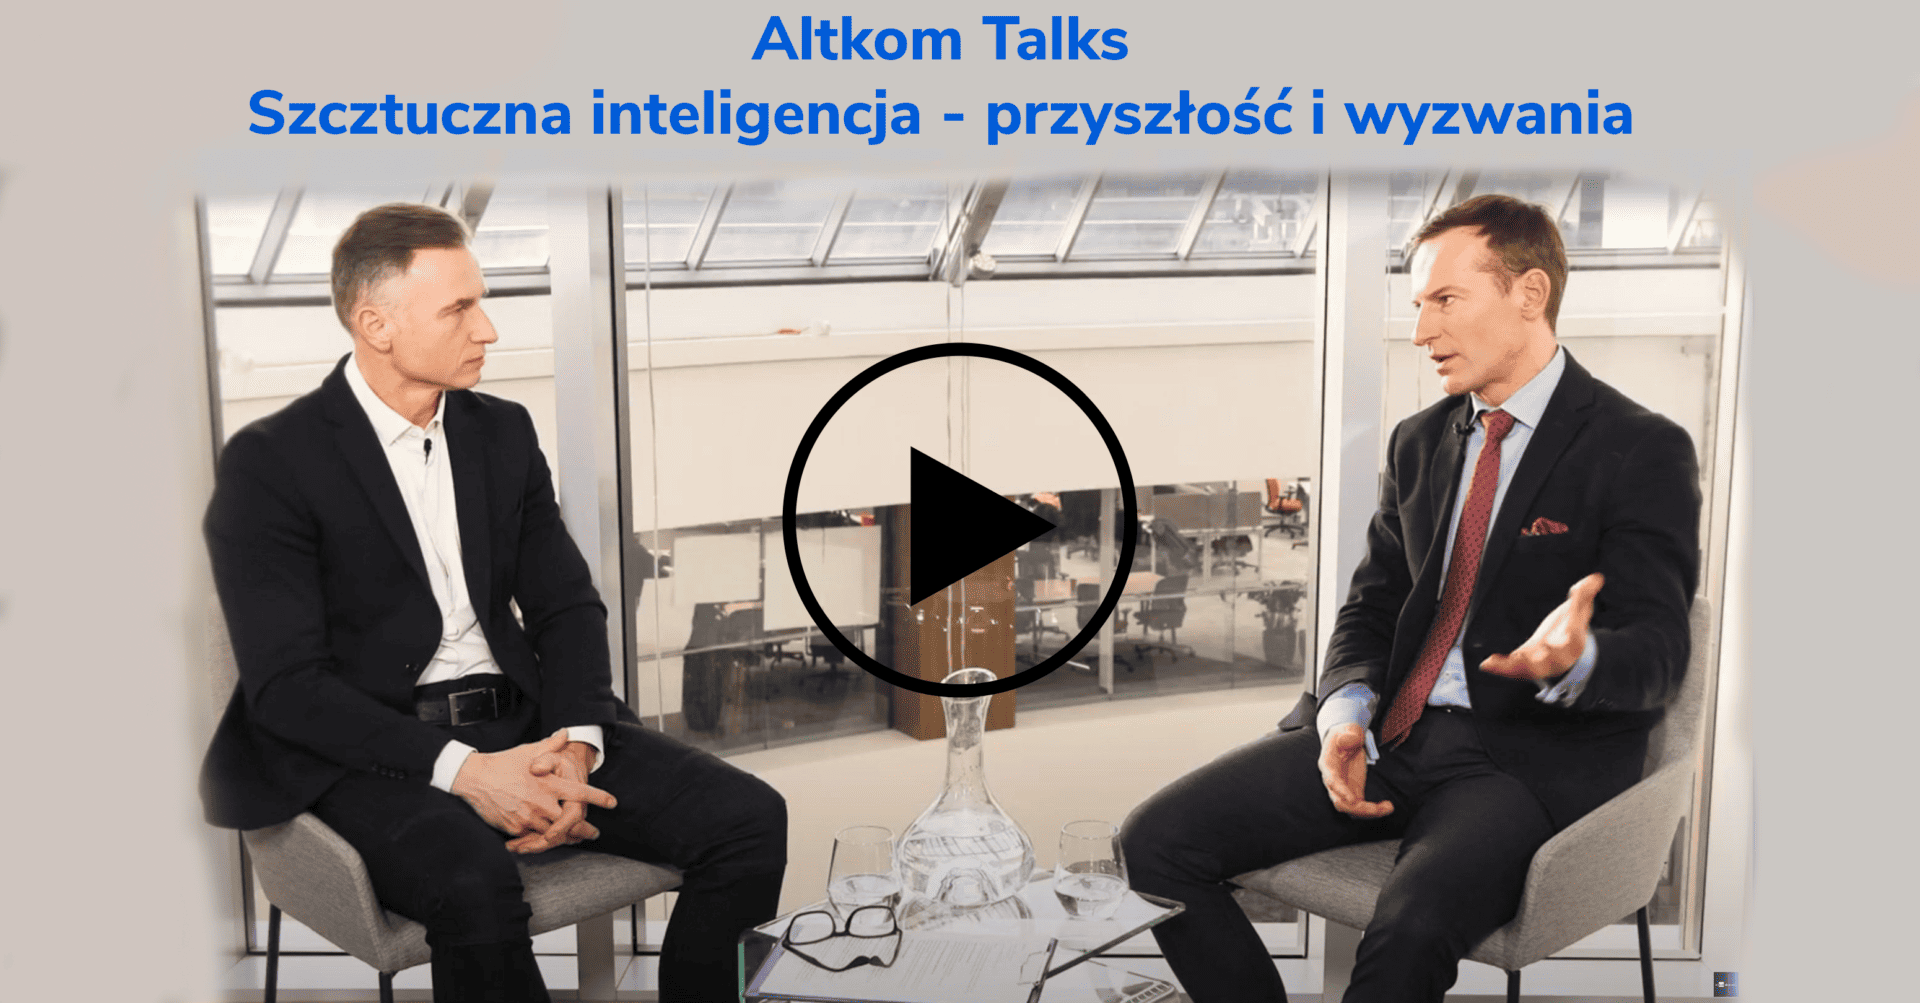 Wywiad dla Altkom Talks: "Sztuczna inteligencja - przyszłość i wyzwania."